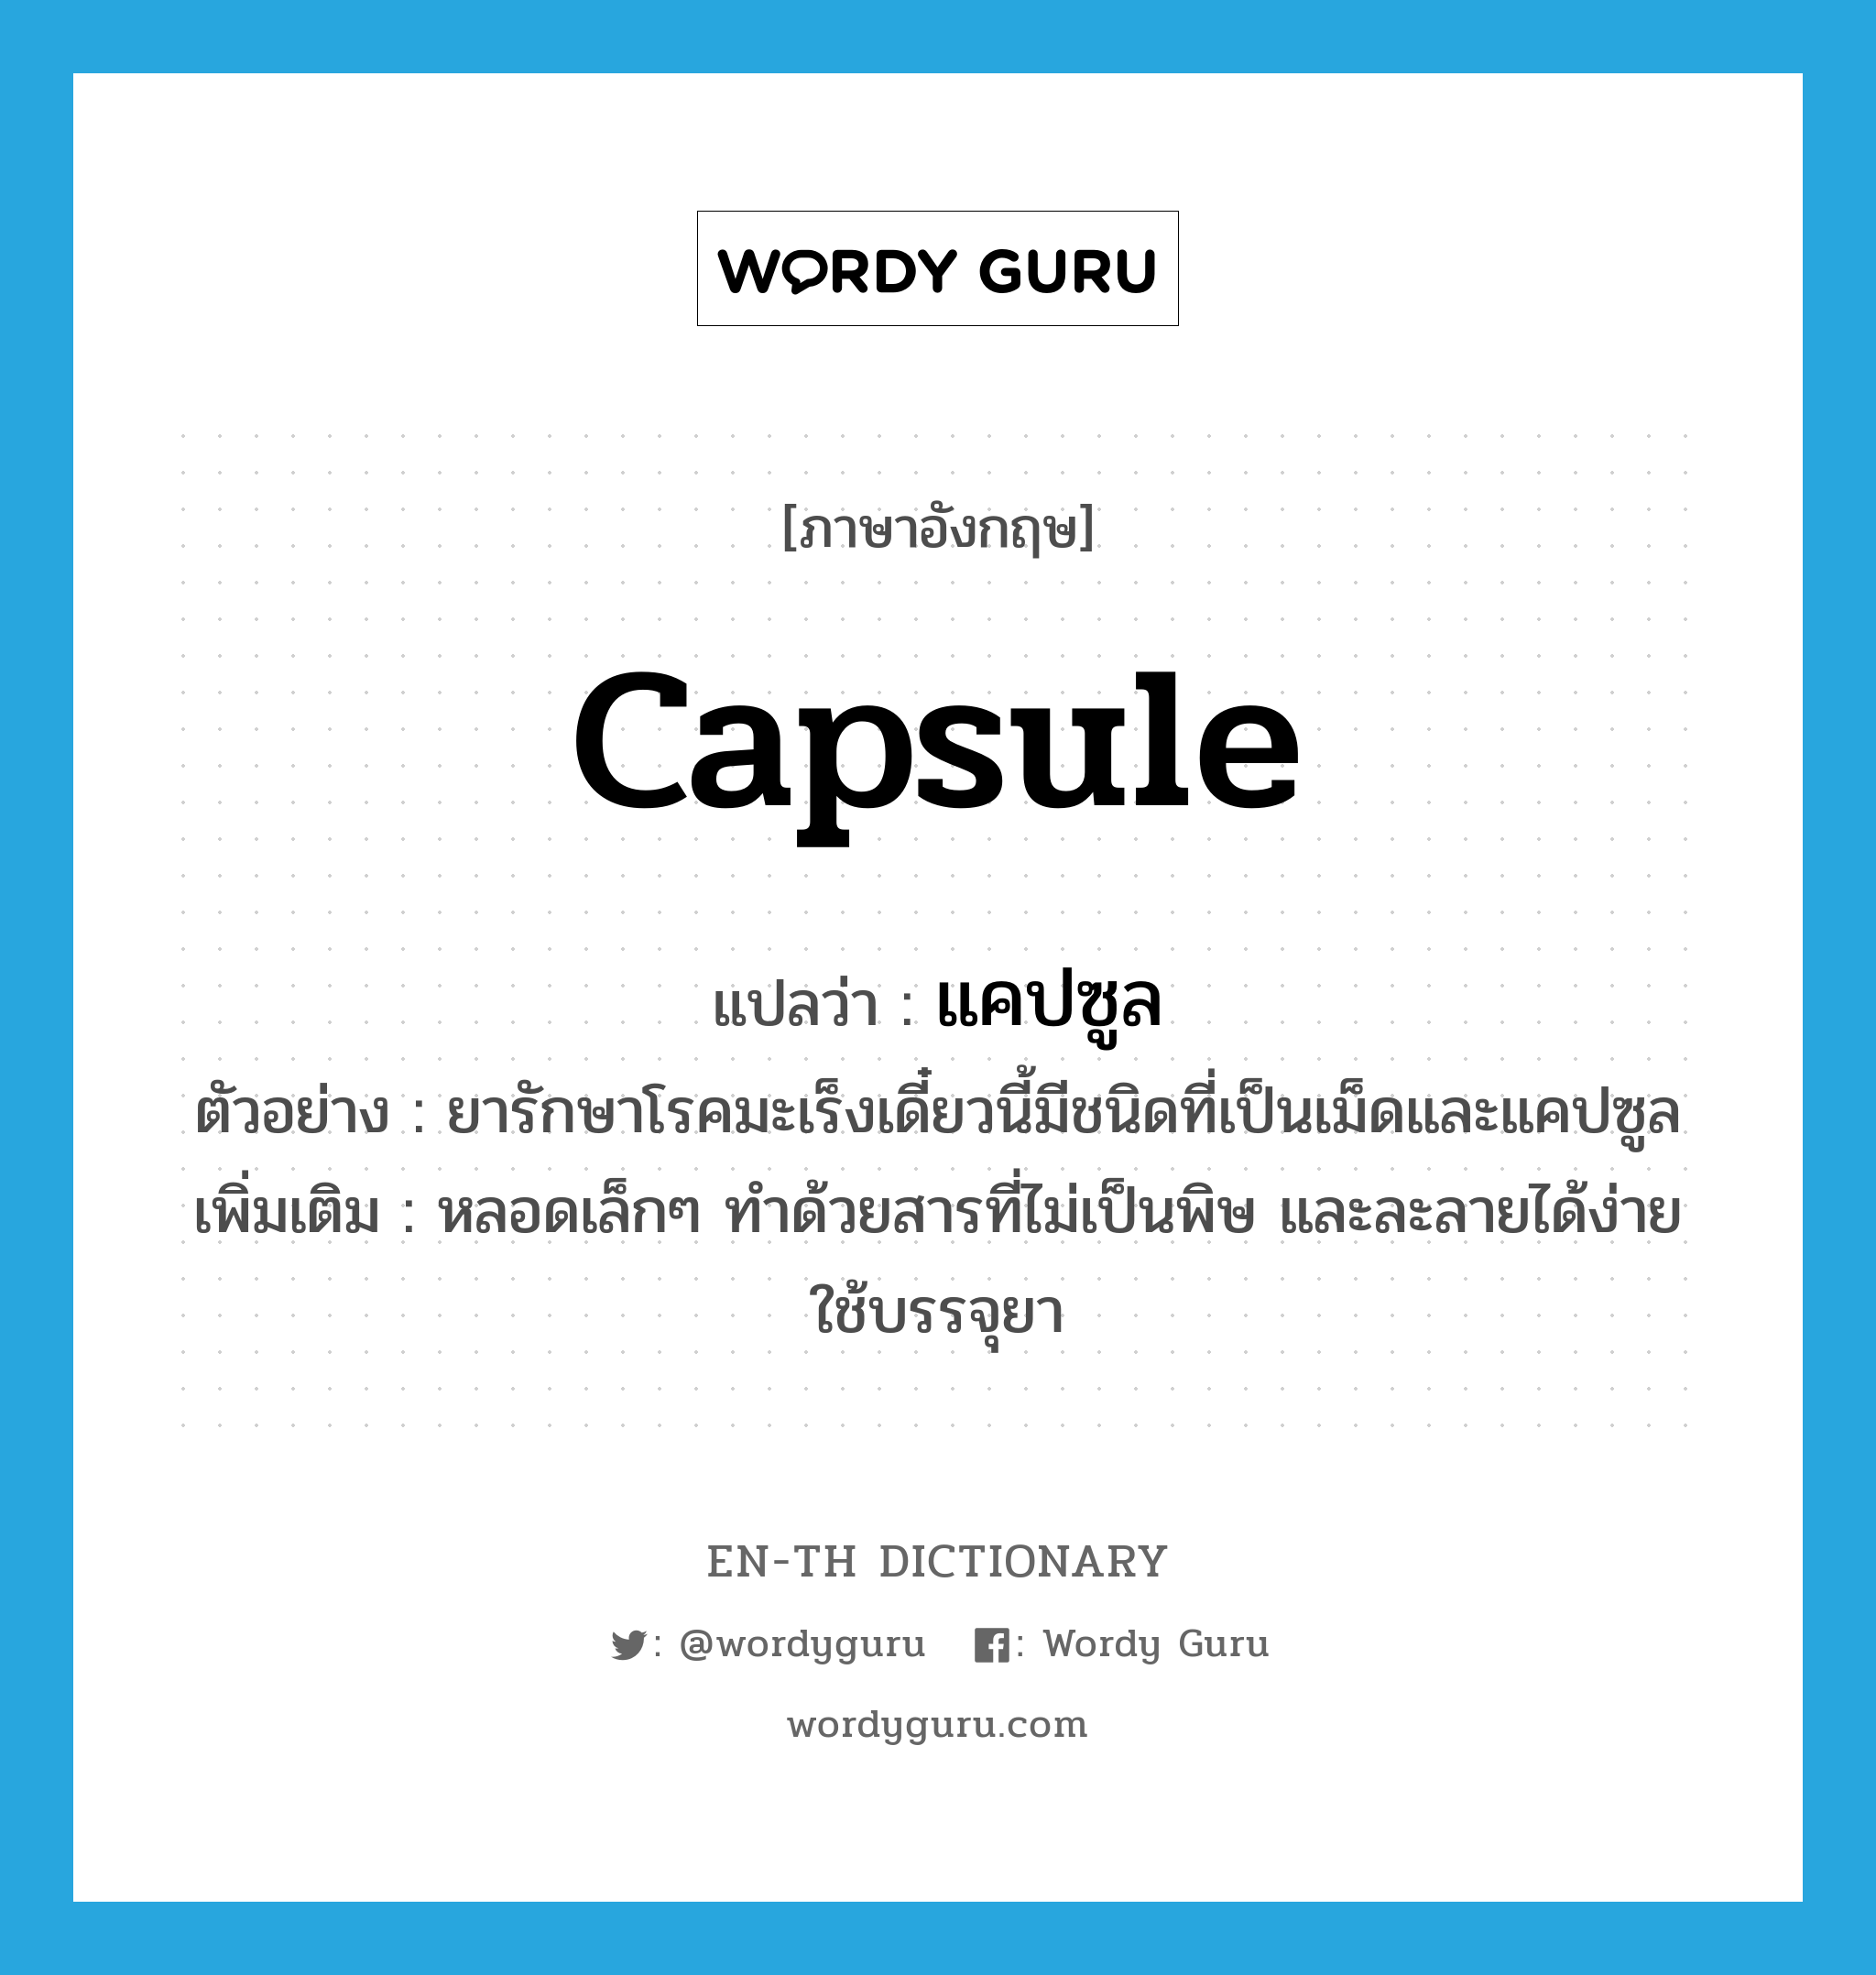 capsule แปลว่า?, คำศัพท์ภาษาอังกฤษ capsule แปลว่า แคปซูล ประเภท N ตัวอย่าง ยารักษาโรคมะเร็งเดี๋ยวนี้มีชนิดที่เป็นเม็ดและแคปซูล เพิ่มเติม หลอดเล็กๆ ทำด้วยสารที่ไม่เป็นพิษ และละลายได้ง่าย ใช้บรรจุยา หมวด N